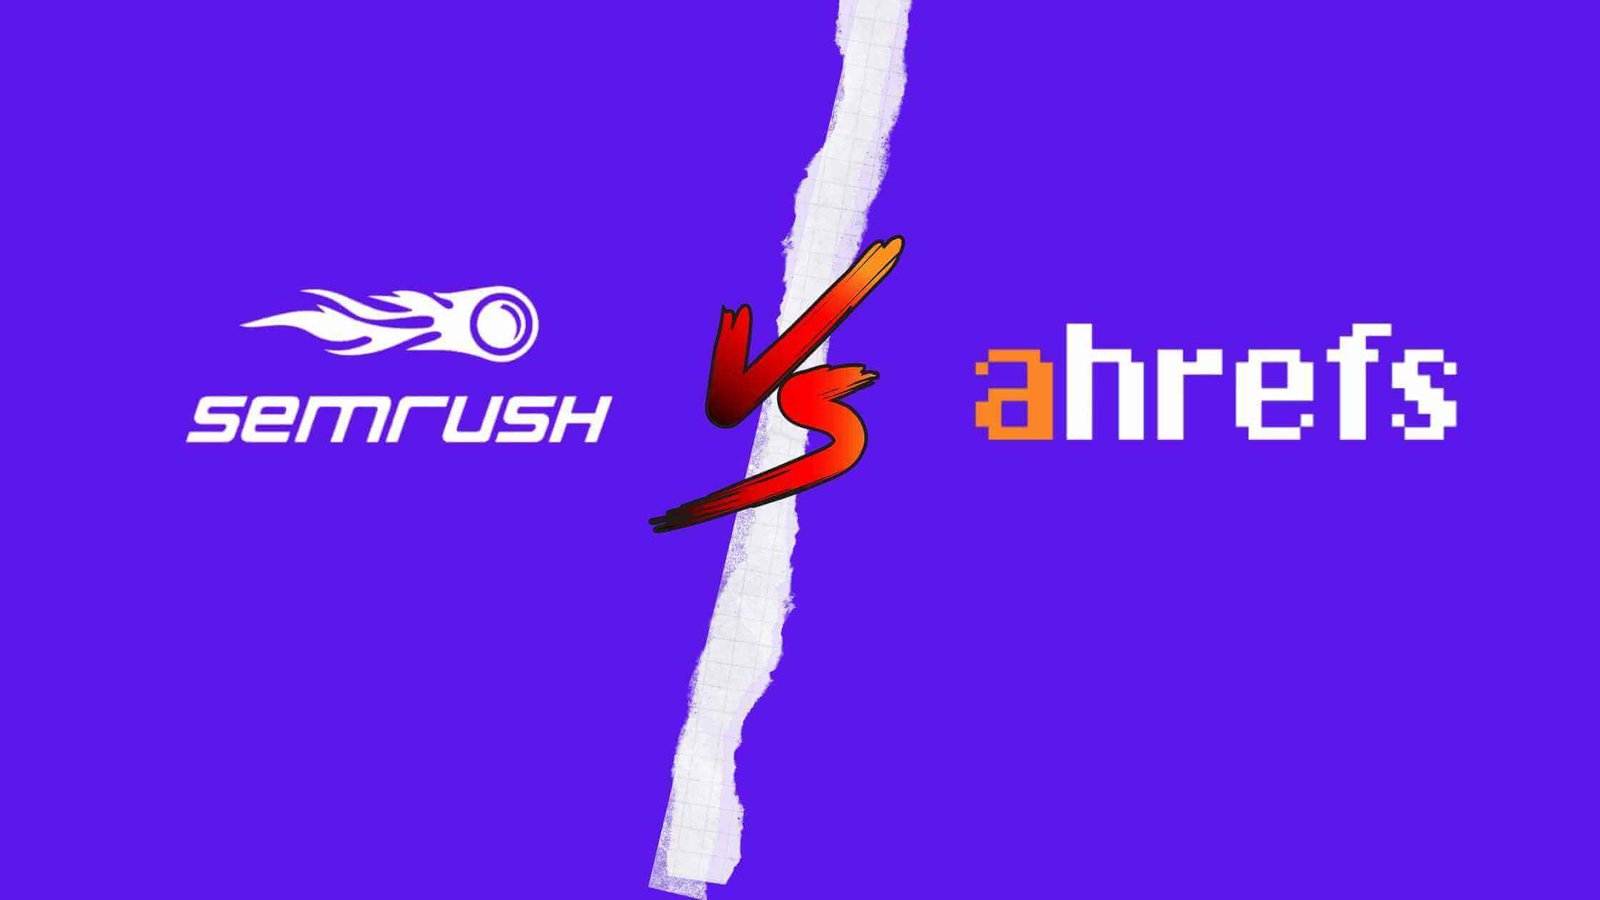 ahrefs vs semrush